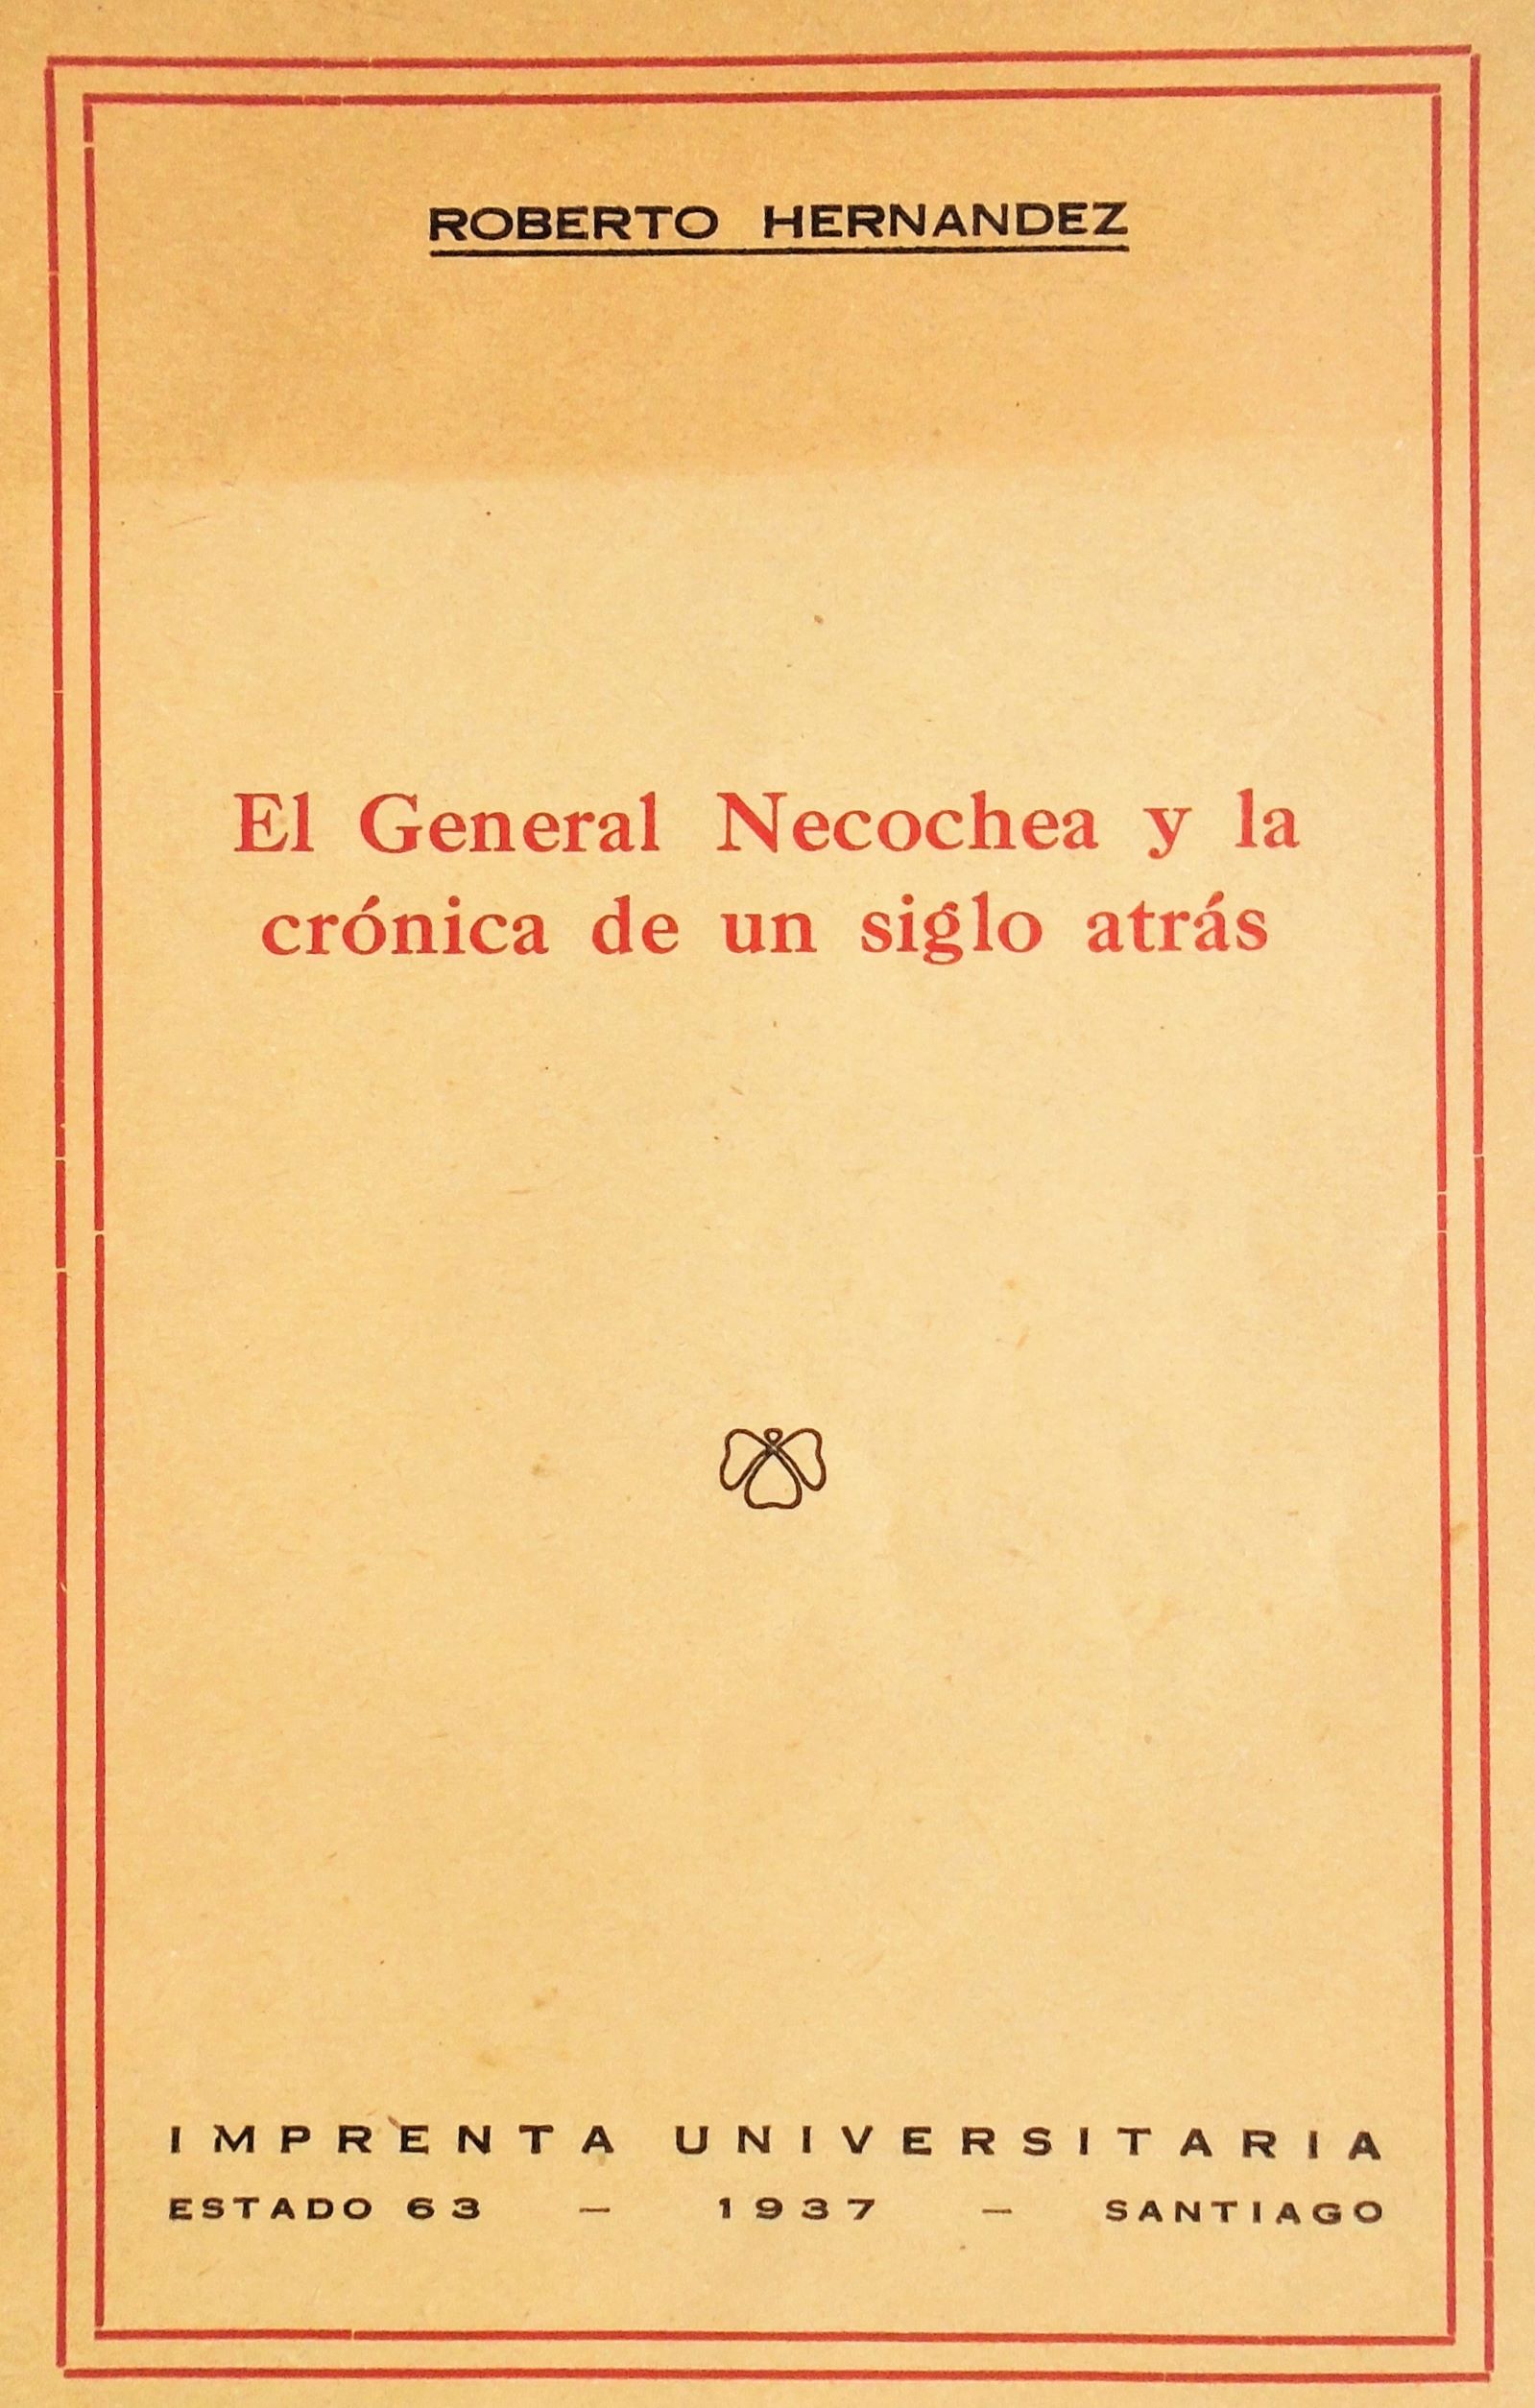 Roberto Hernández - El General Necochea y la crónica de un siglo atrás